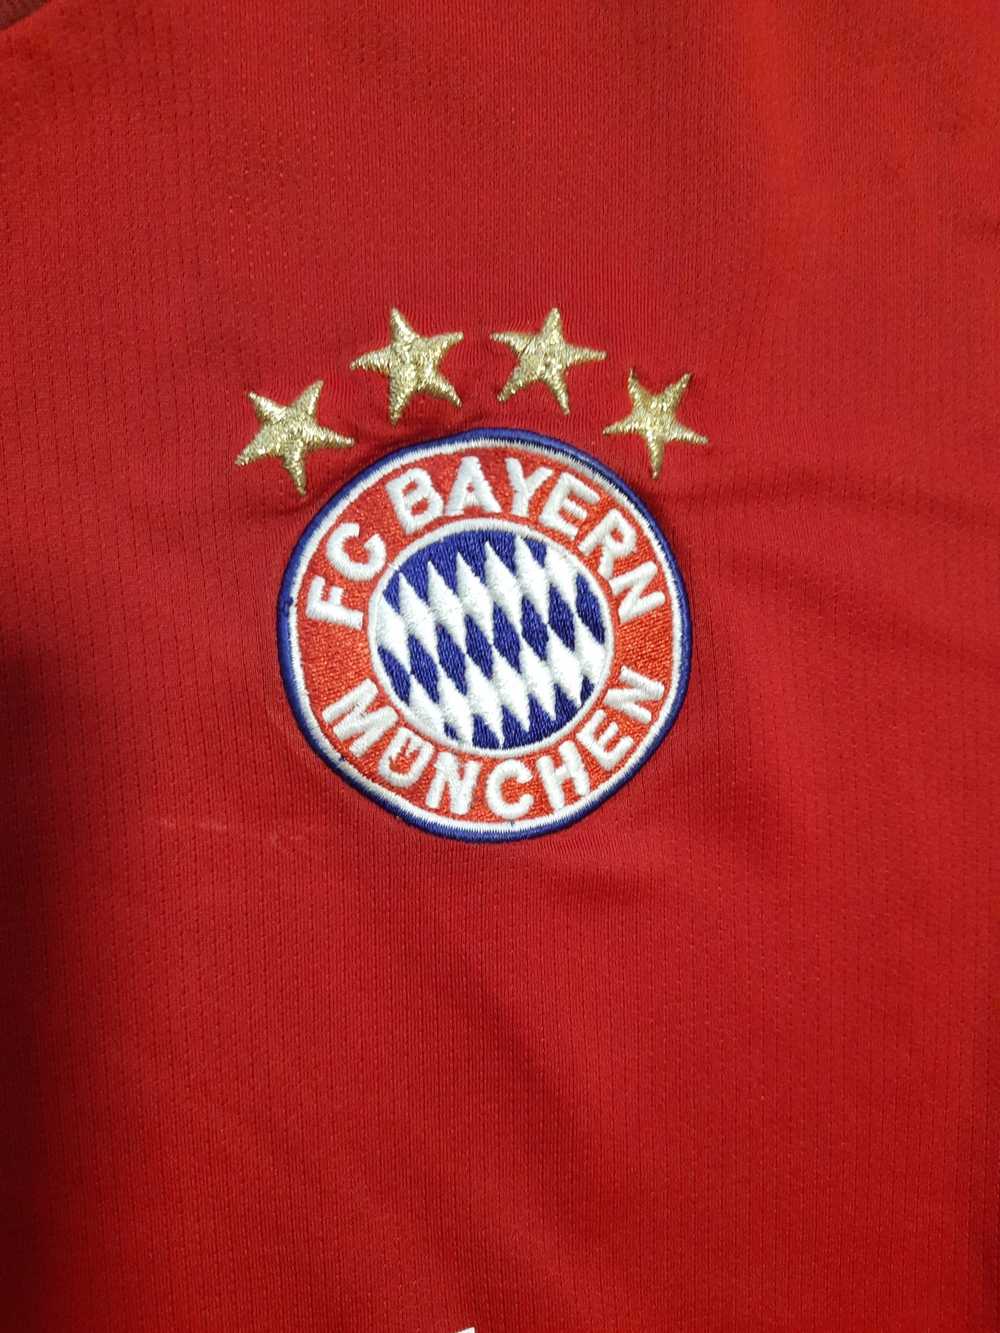 Adidas × Soccer Jersey Adidas Bayern Munich Jerse… - image 7